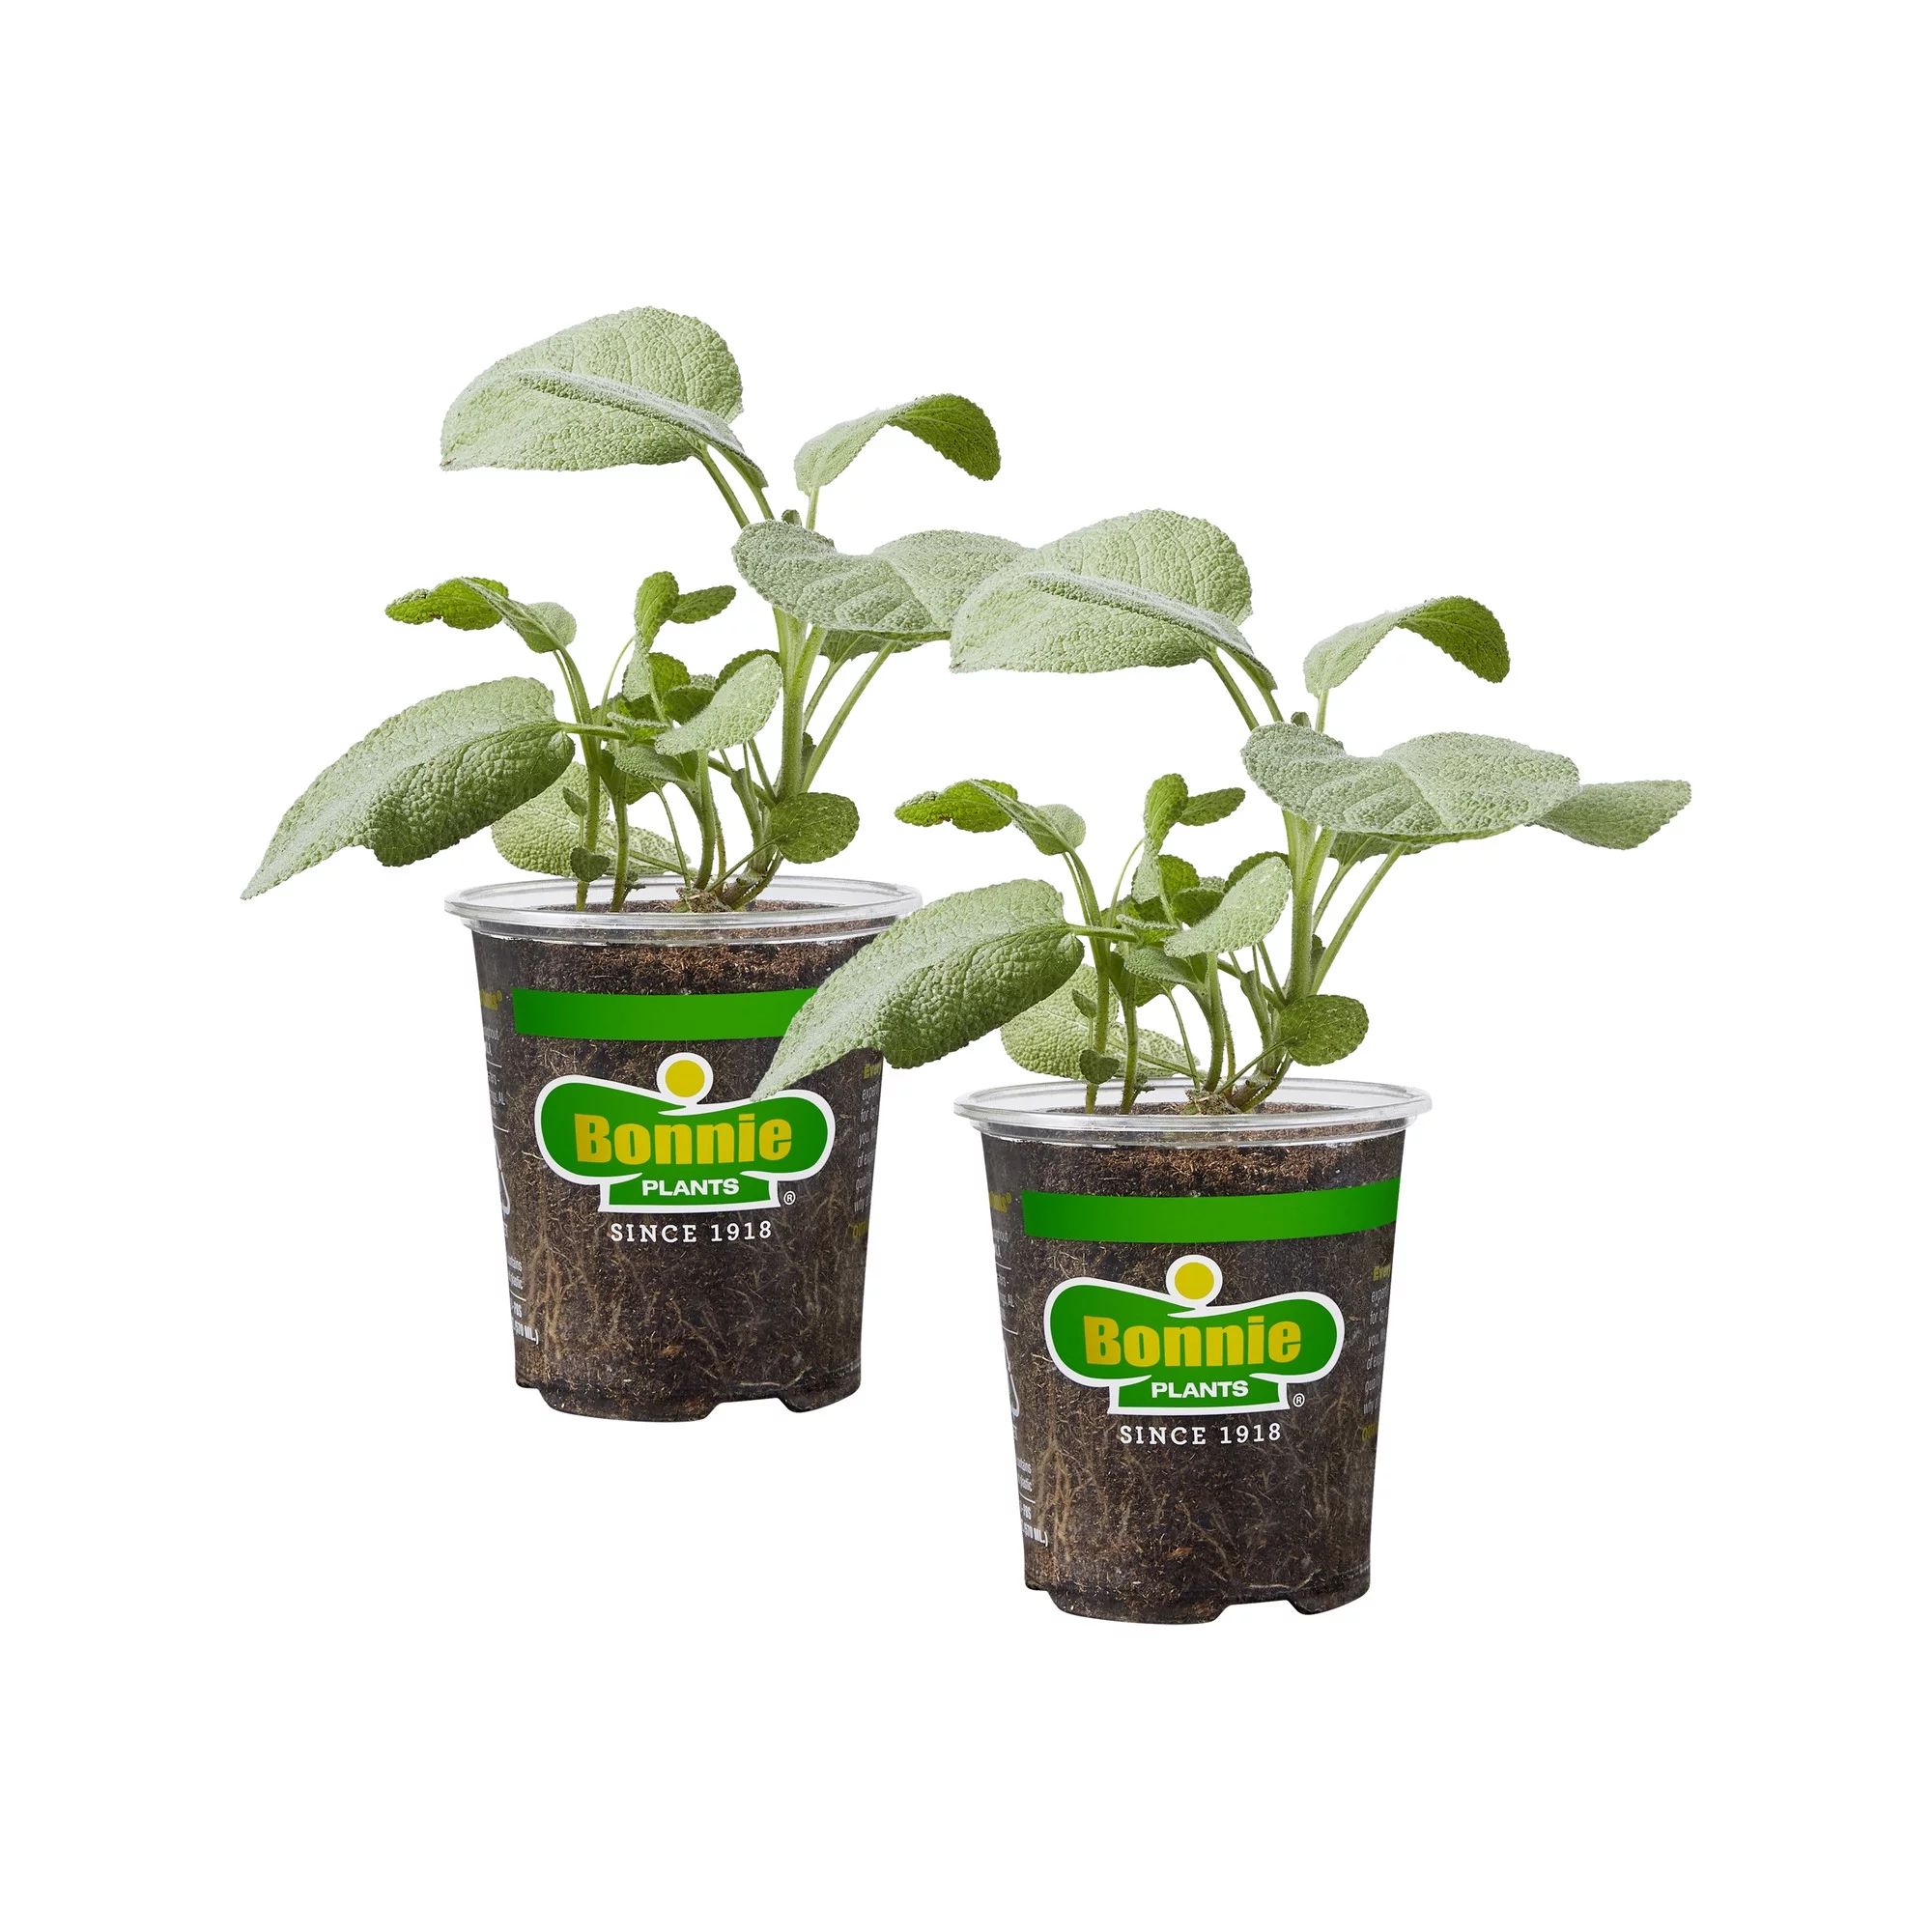 Bonnie Plants Garden Sage 19.3 oz. 2-Pack - Walmart.com | Walmart (US)